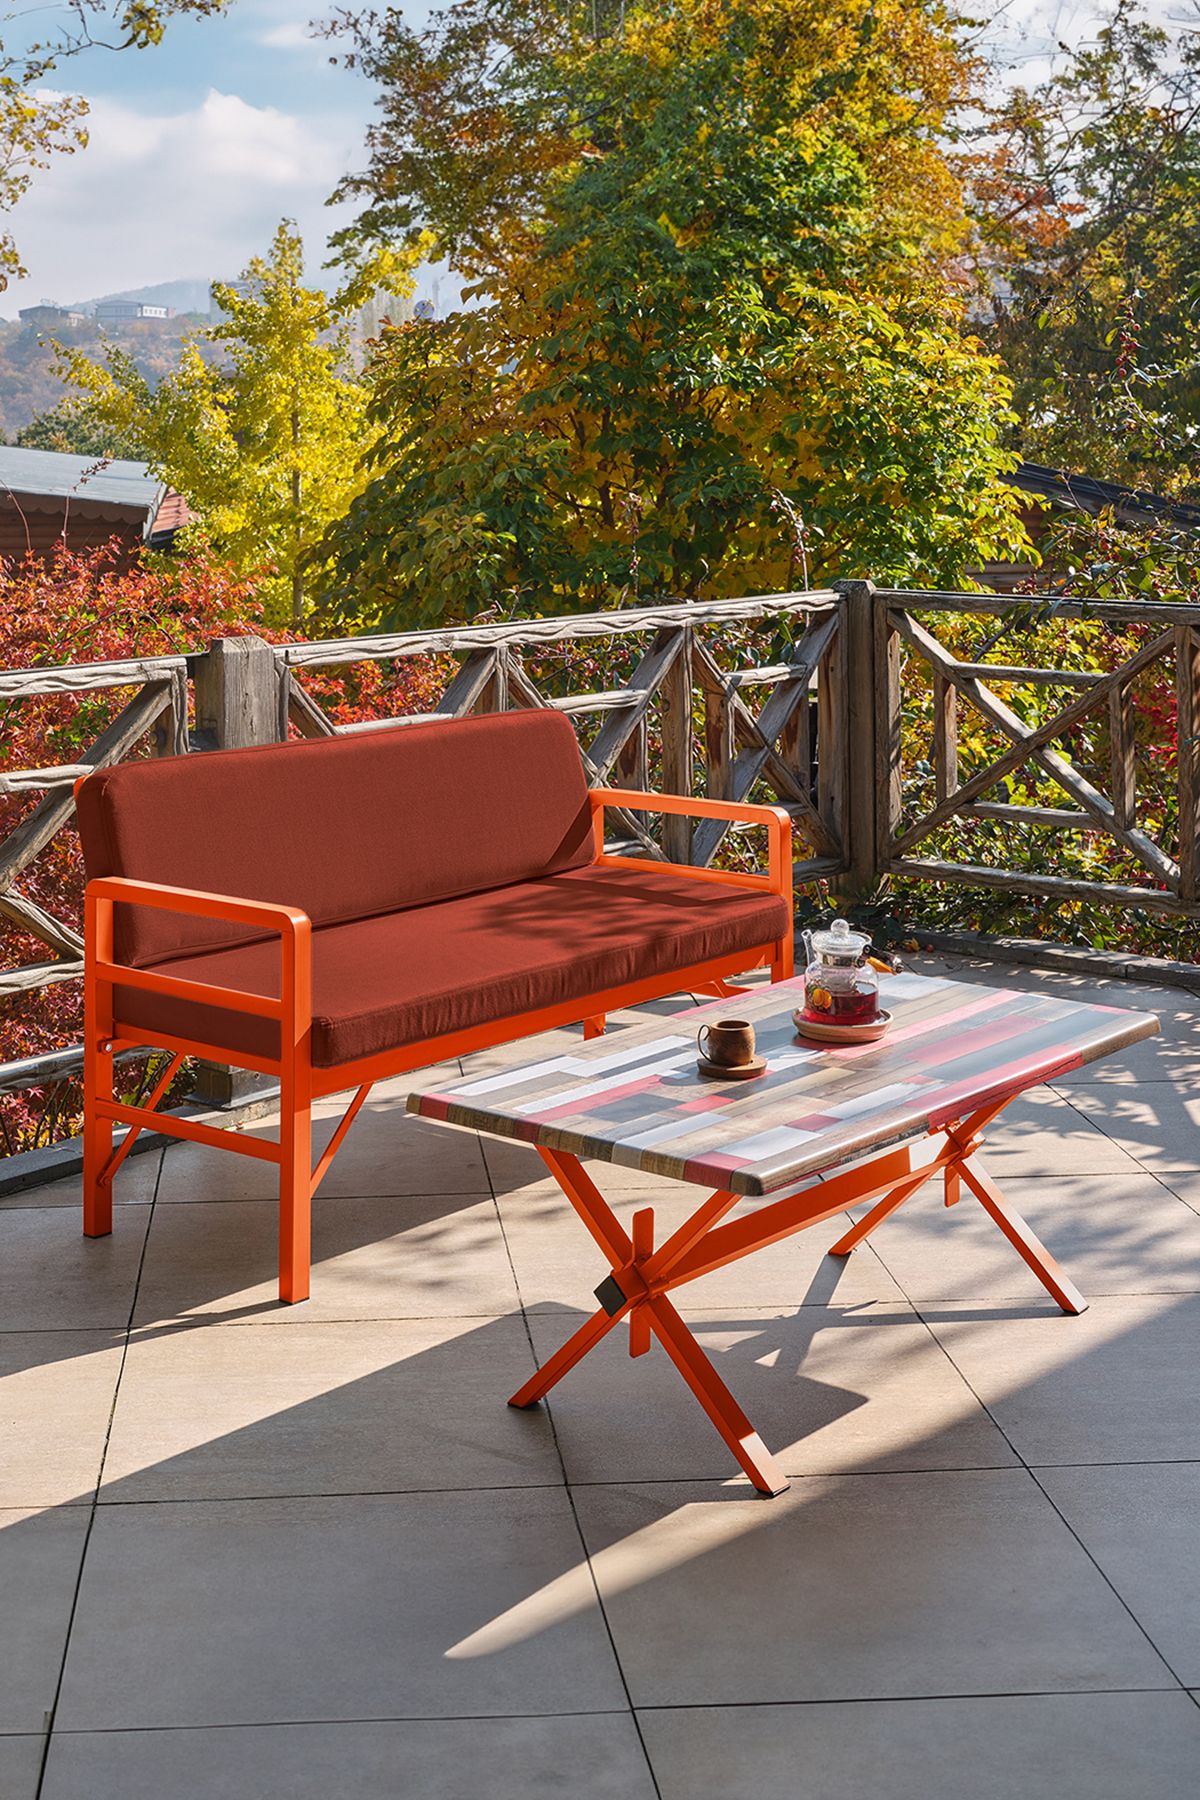 Unimet Katlanır Balkon&teras Bahçe Koltuk Turuncu-kiremit